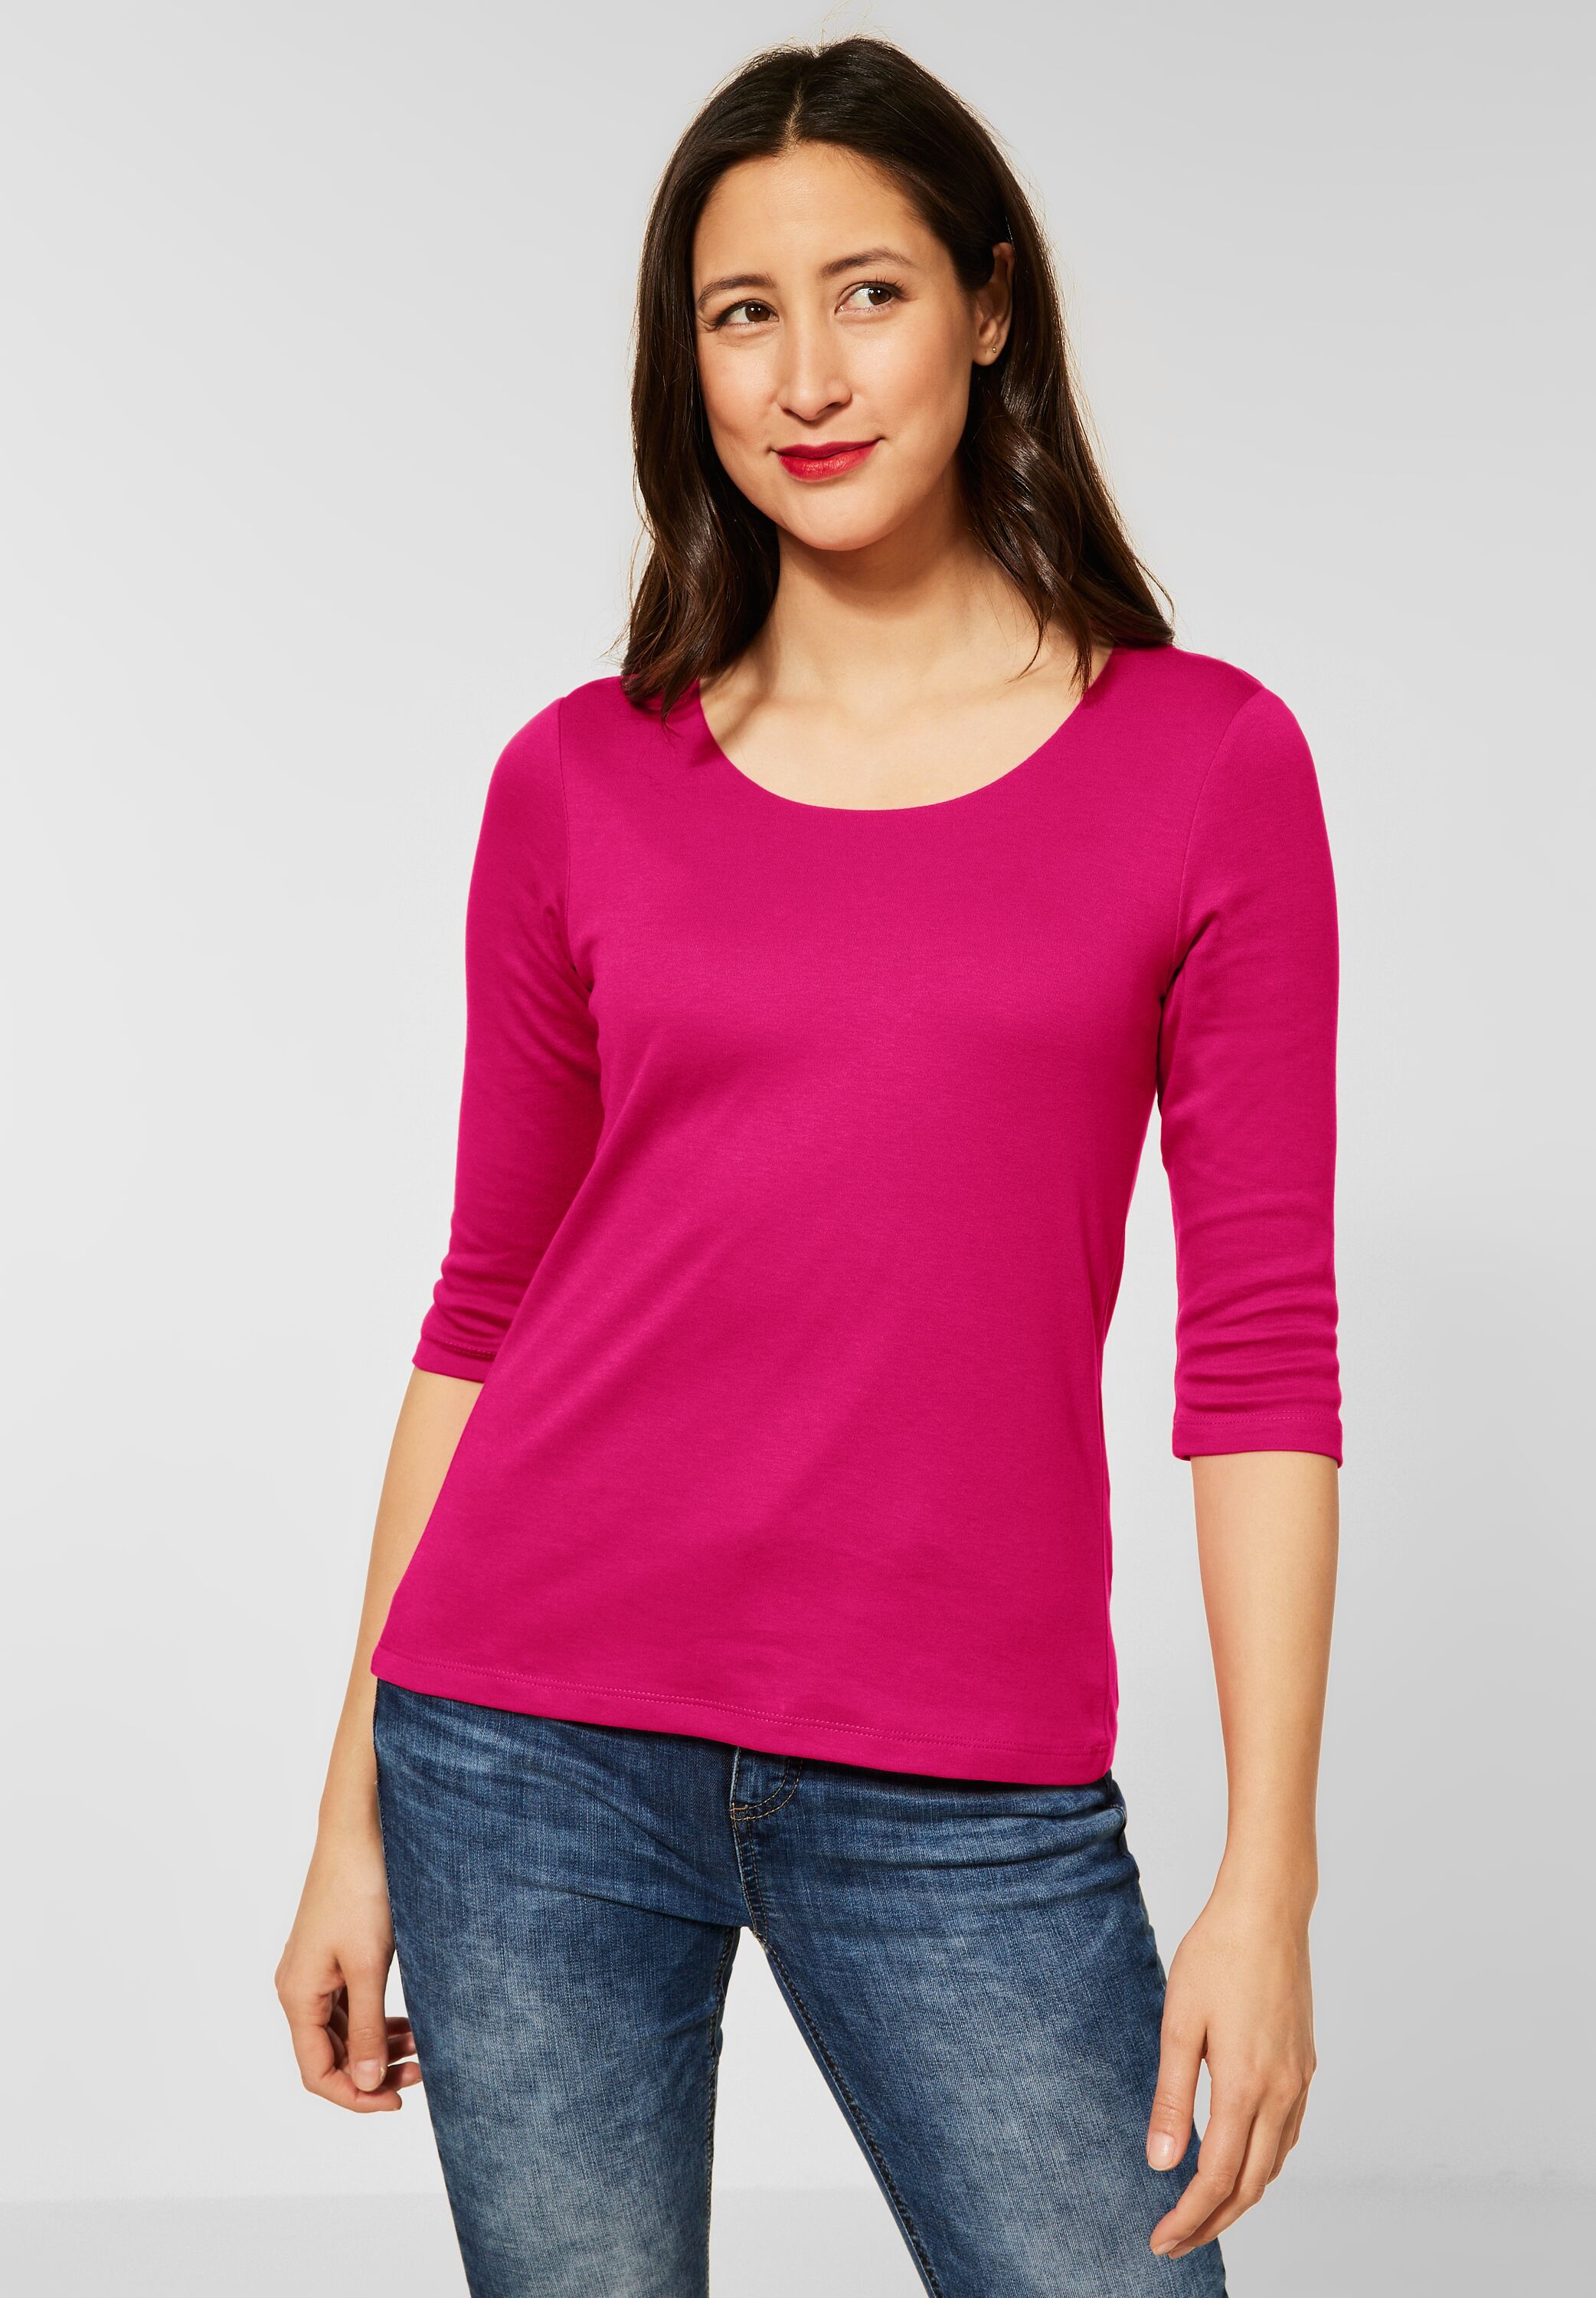 Basic Shirt in Powerful Pink von Street One online kaufen